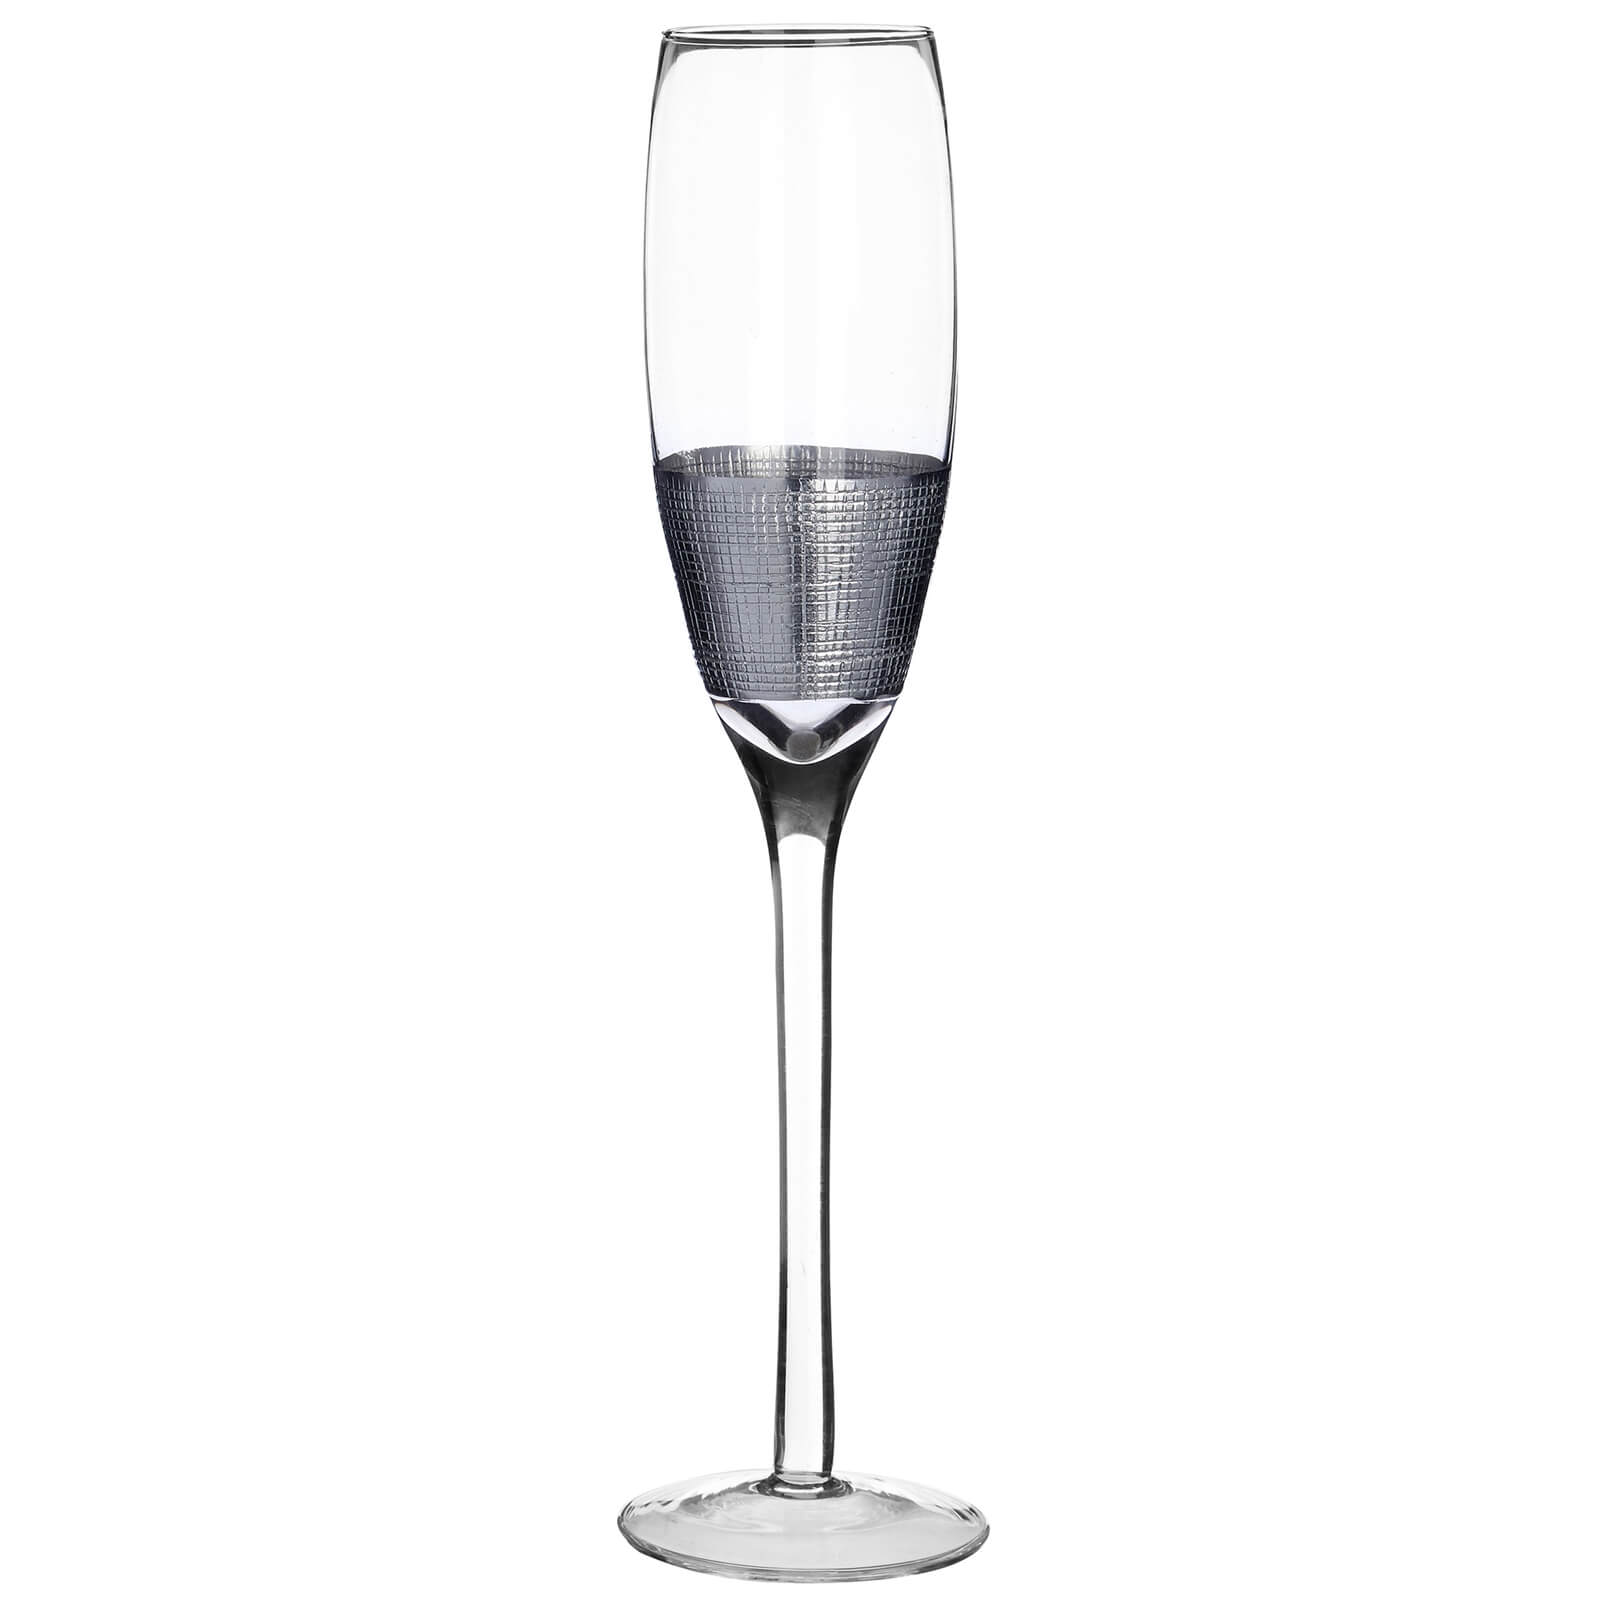 Photo of Apollo Champagne Glasses - Set Of 4